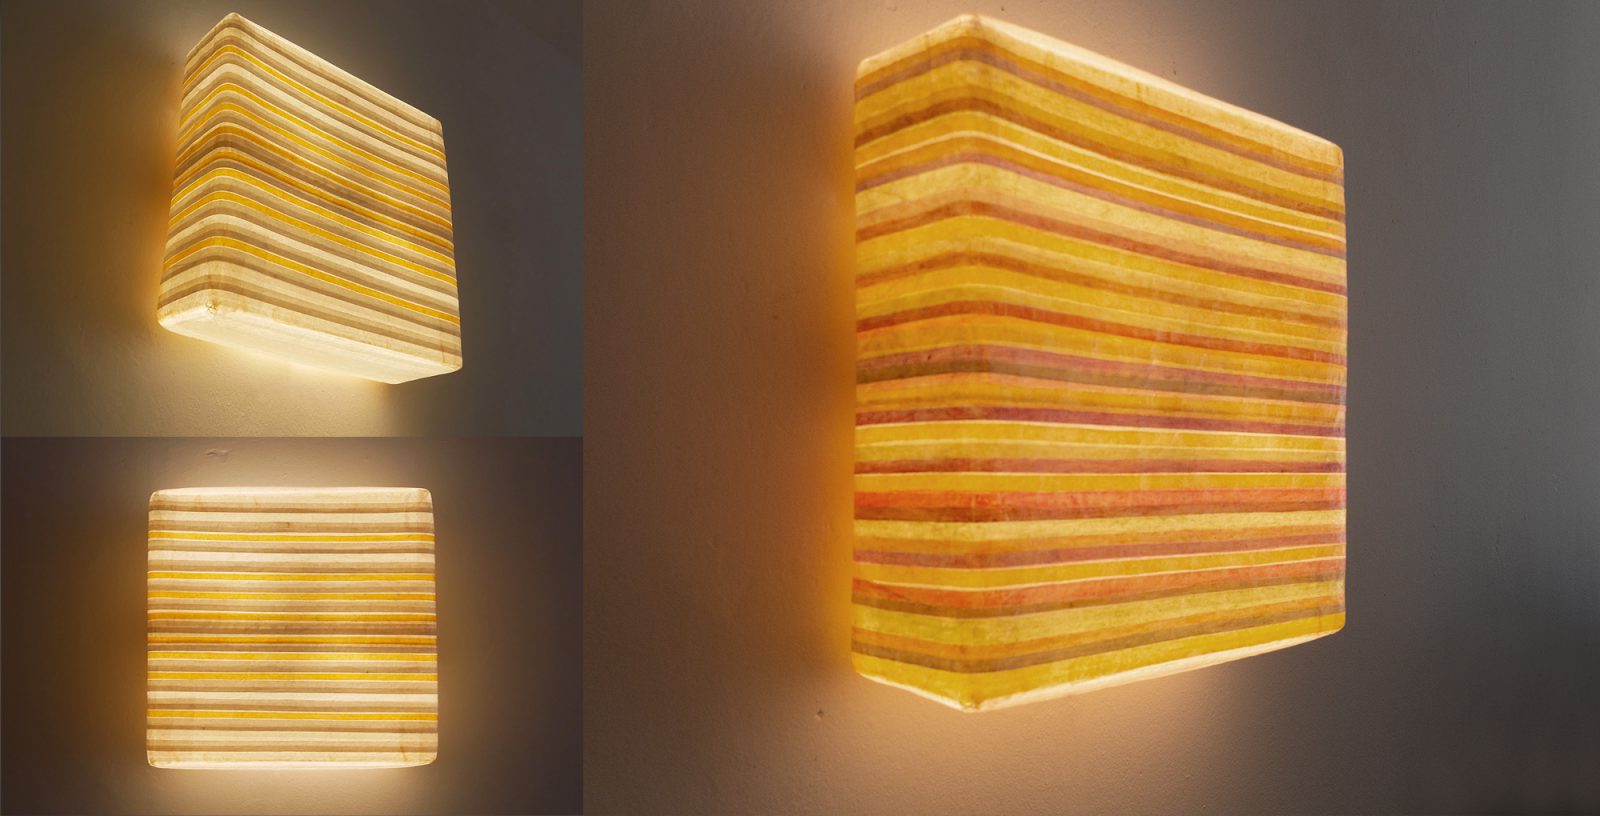 Leuchtobjekt – Kurkuma + Ölfarben auf Papier, 54 x 54 x 16 cm I 2019